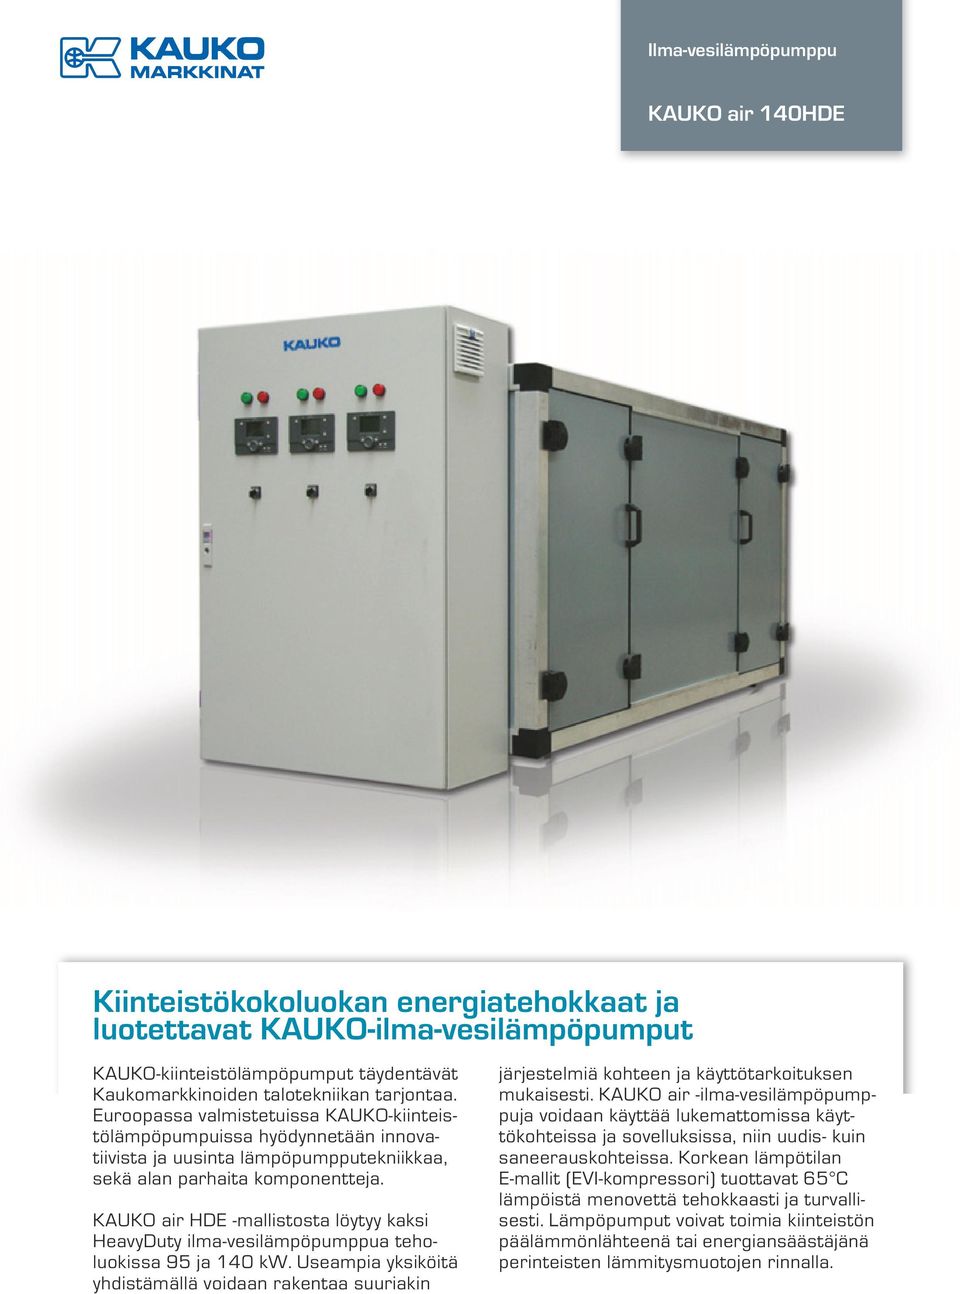 KAUKO air HDE -mallistosta löytyy kaksi HeavyDuty ilma-vesilämpöpumppua teholuokissa 95 ja 140 kw.